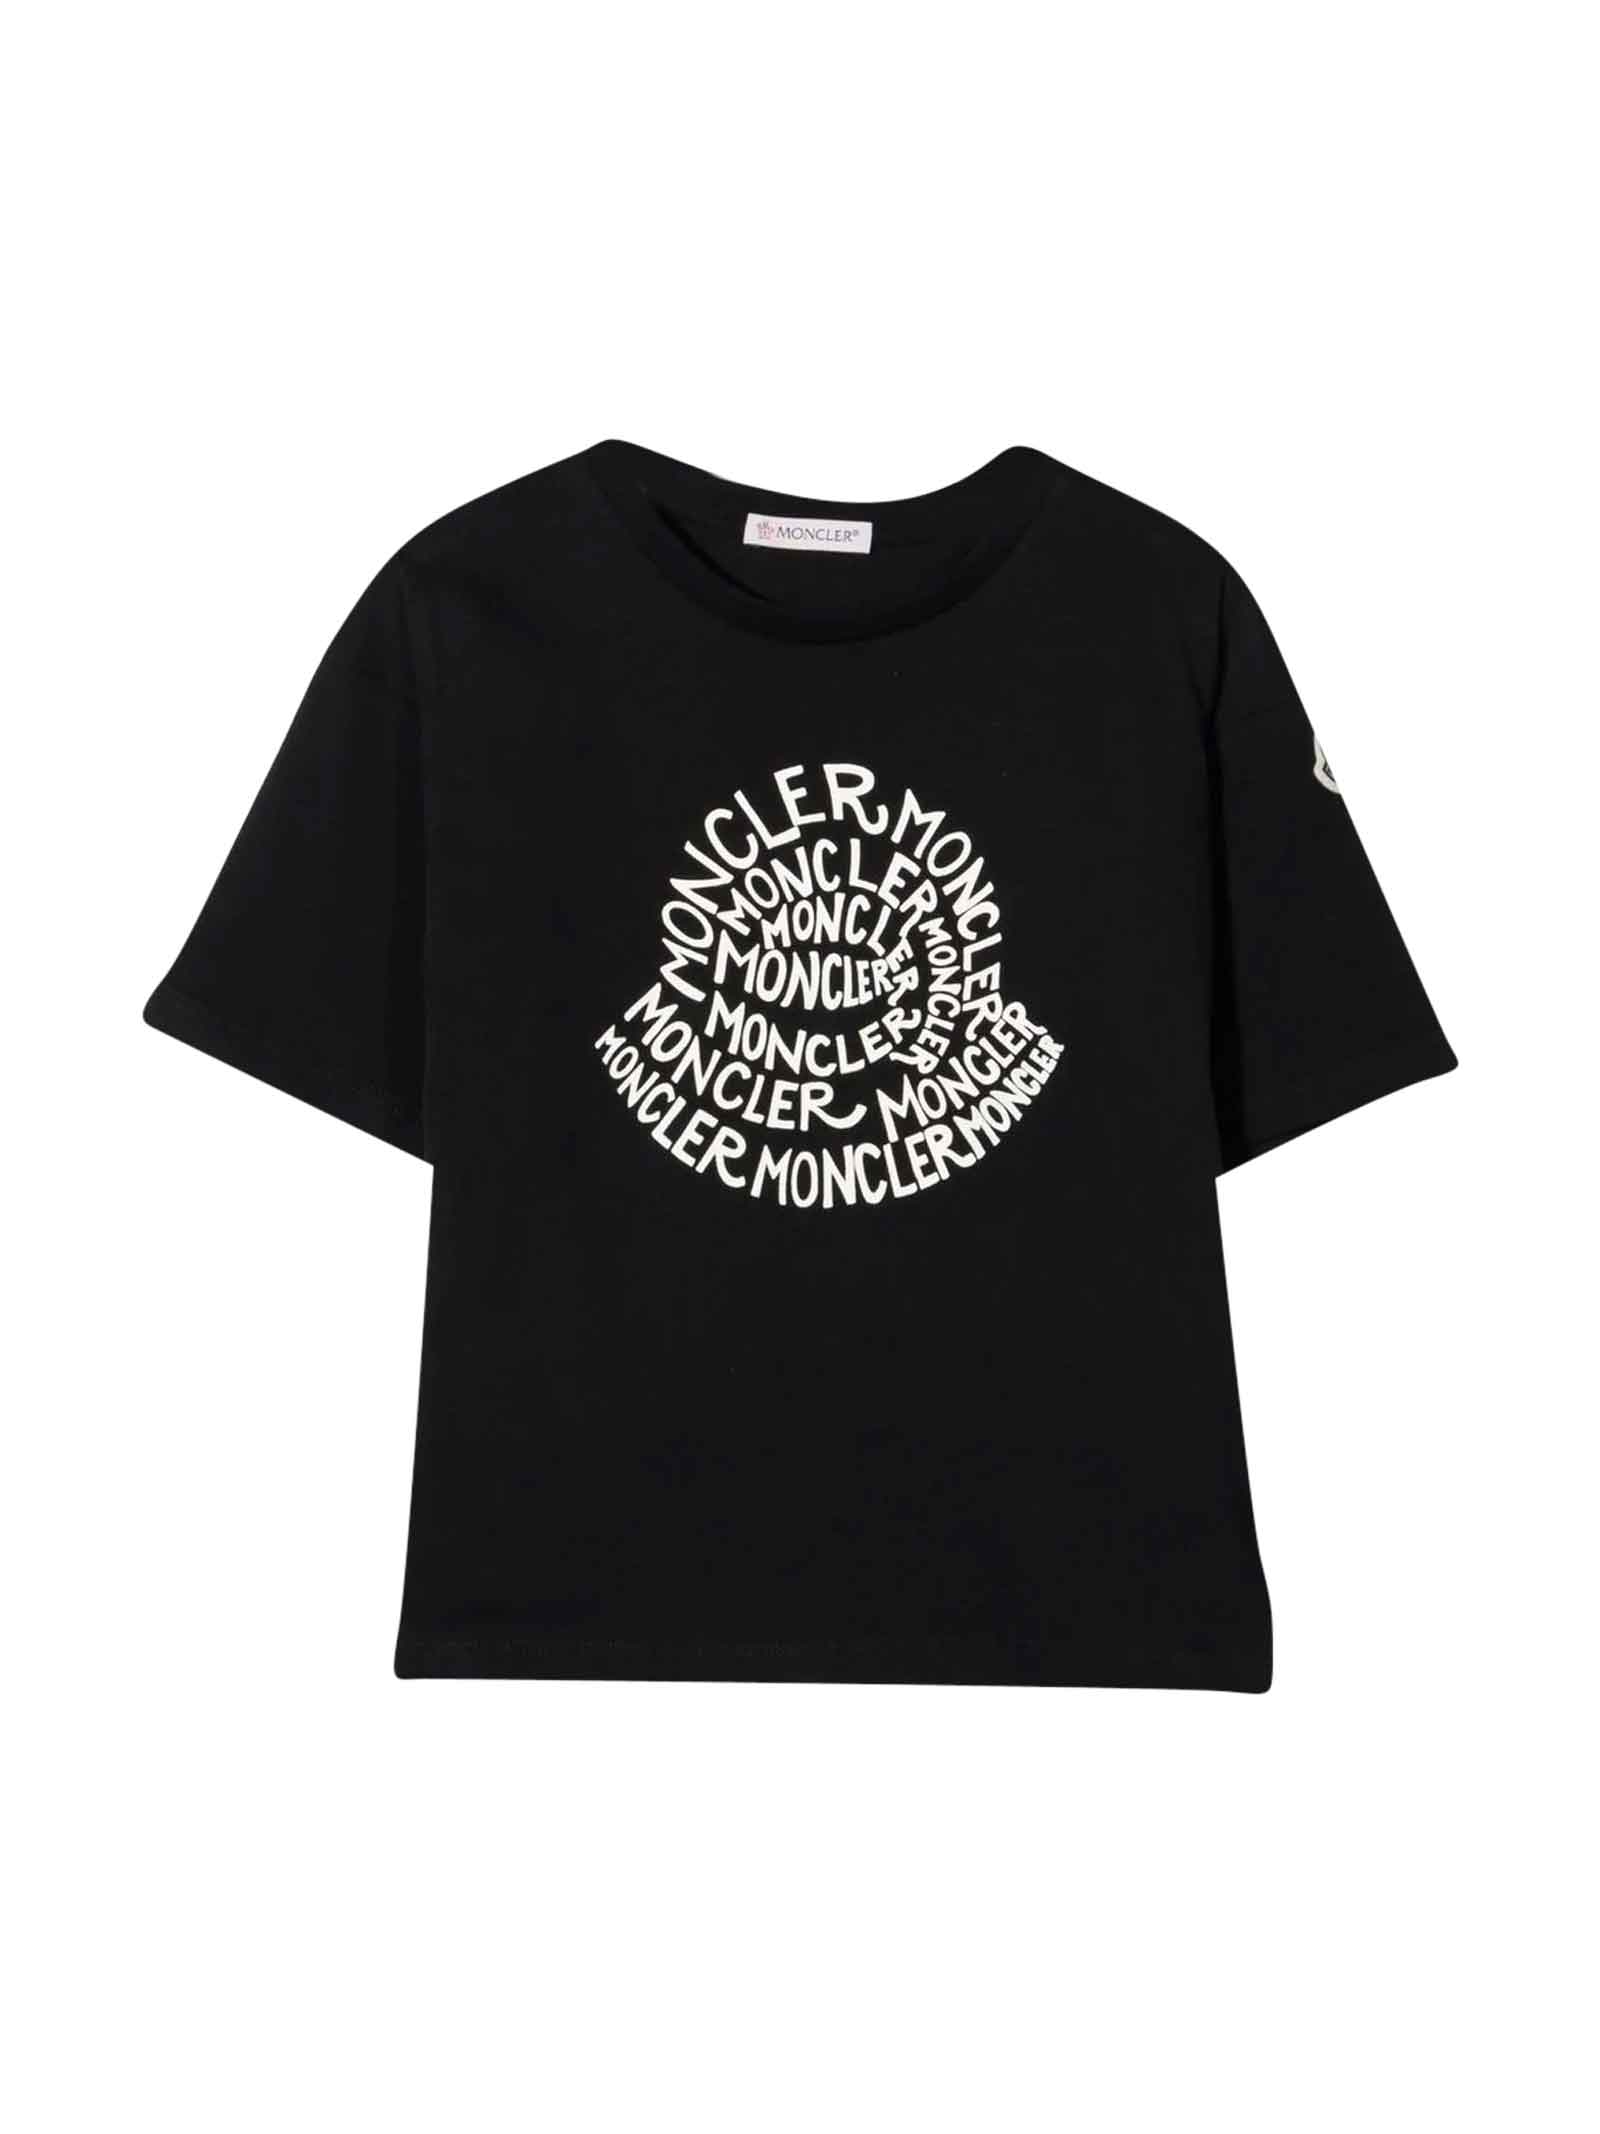 Moncler Unisex Black T-shirt